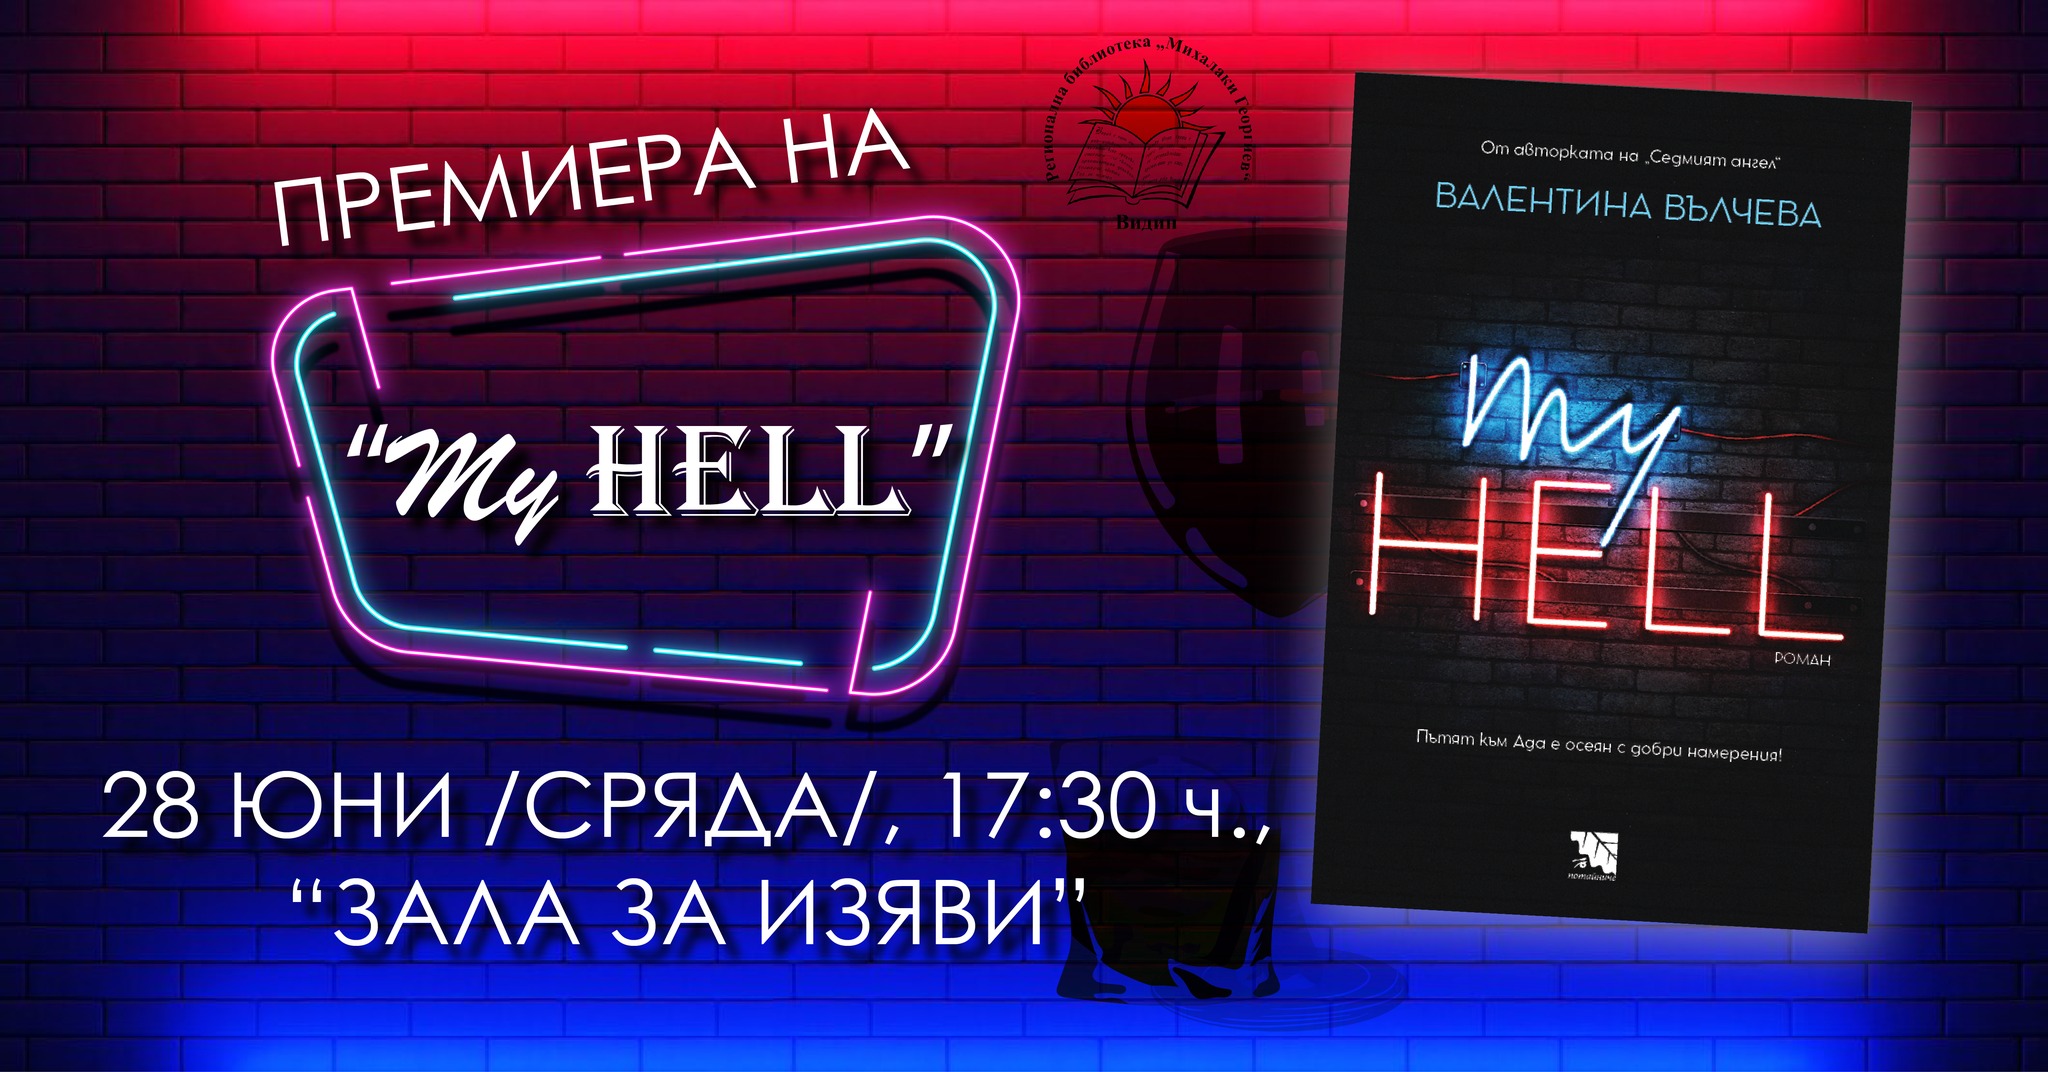 Представяне на романа „My Hell“ от Валентина Вълчева